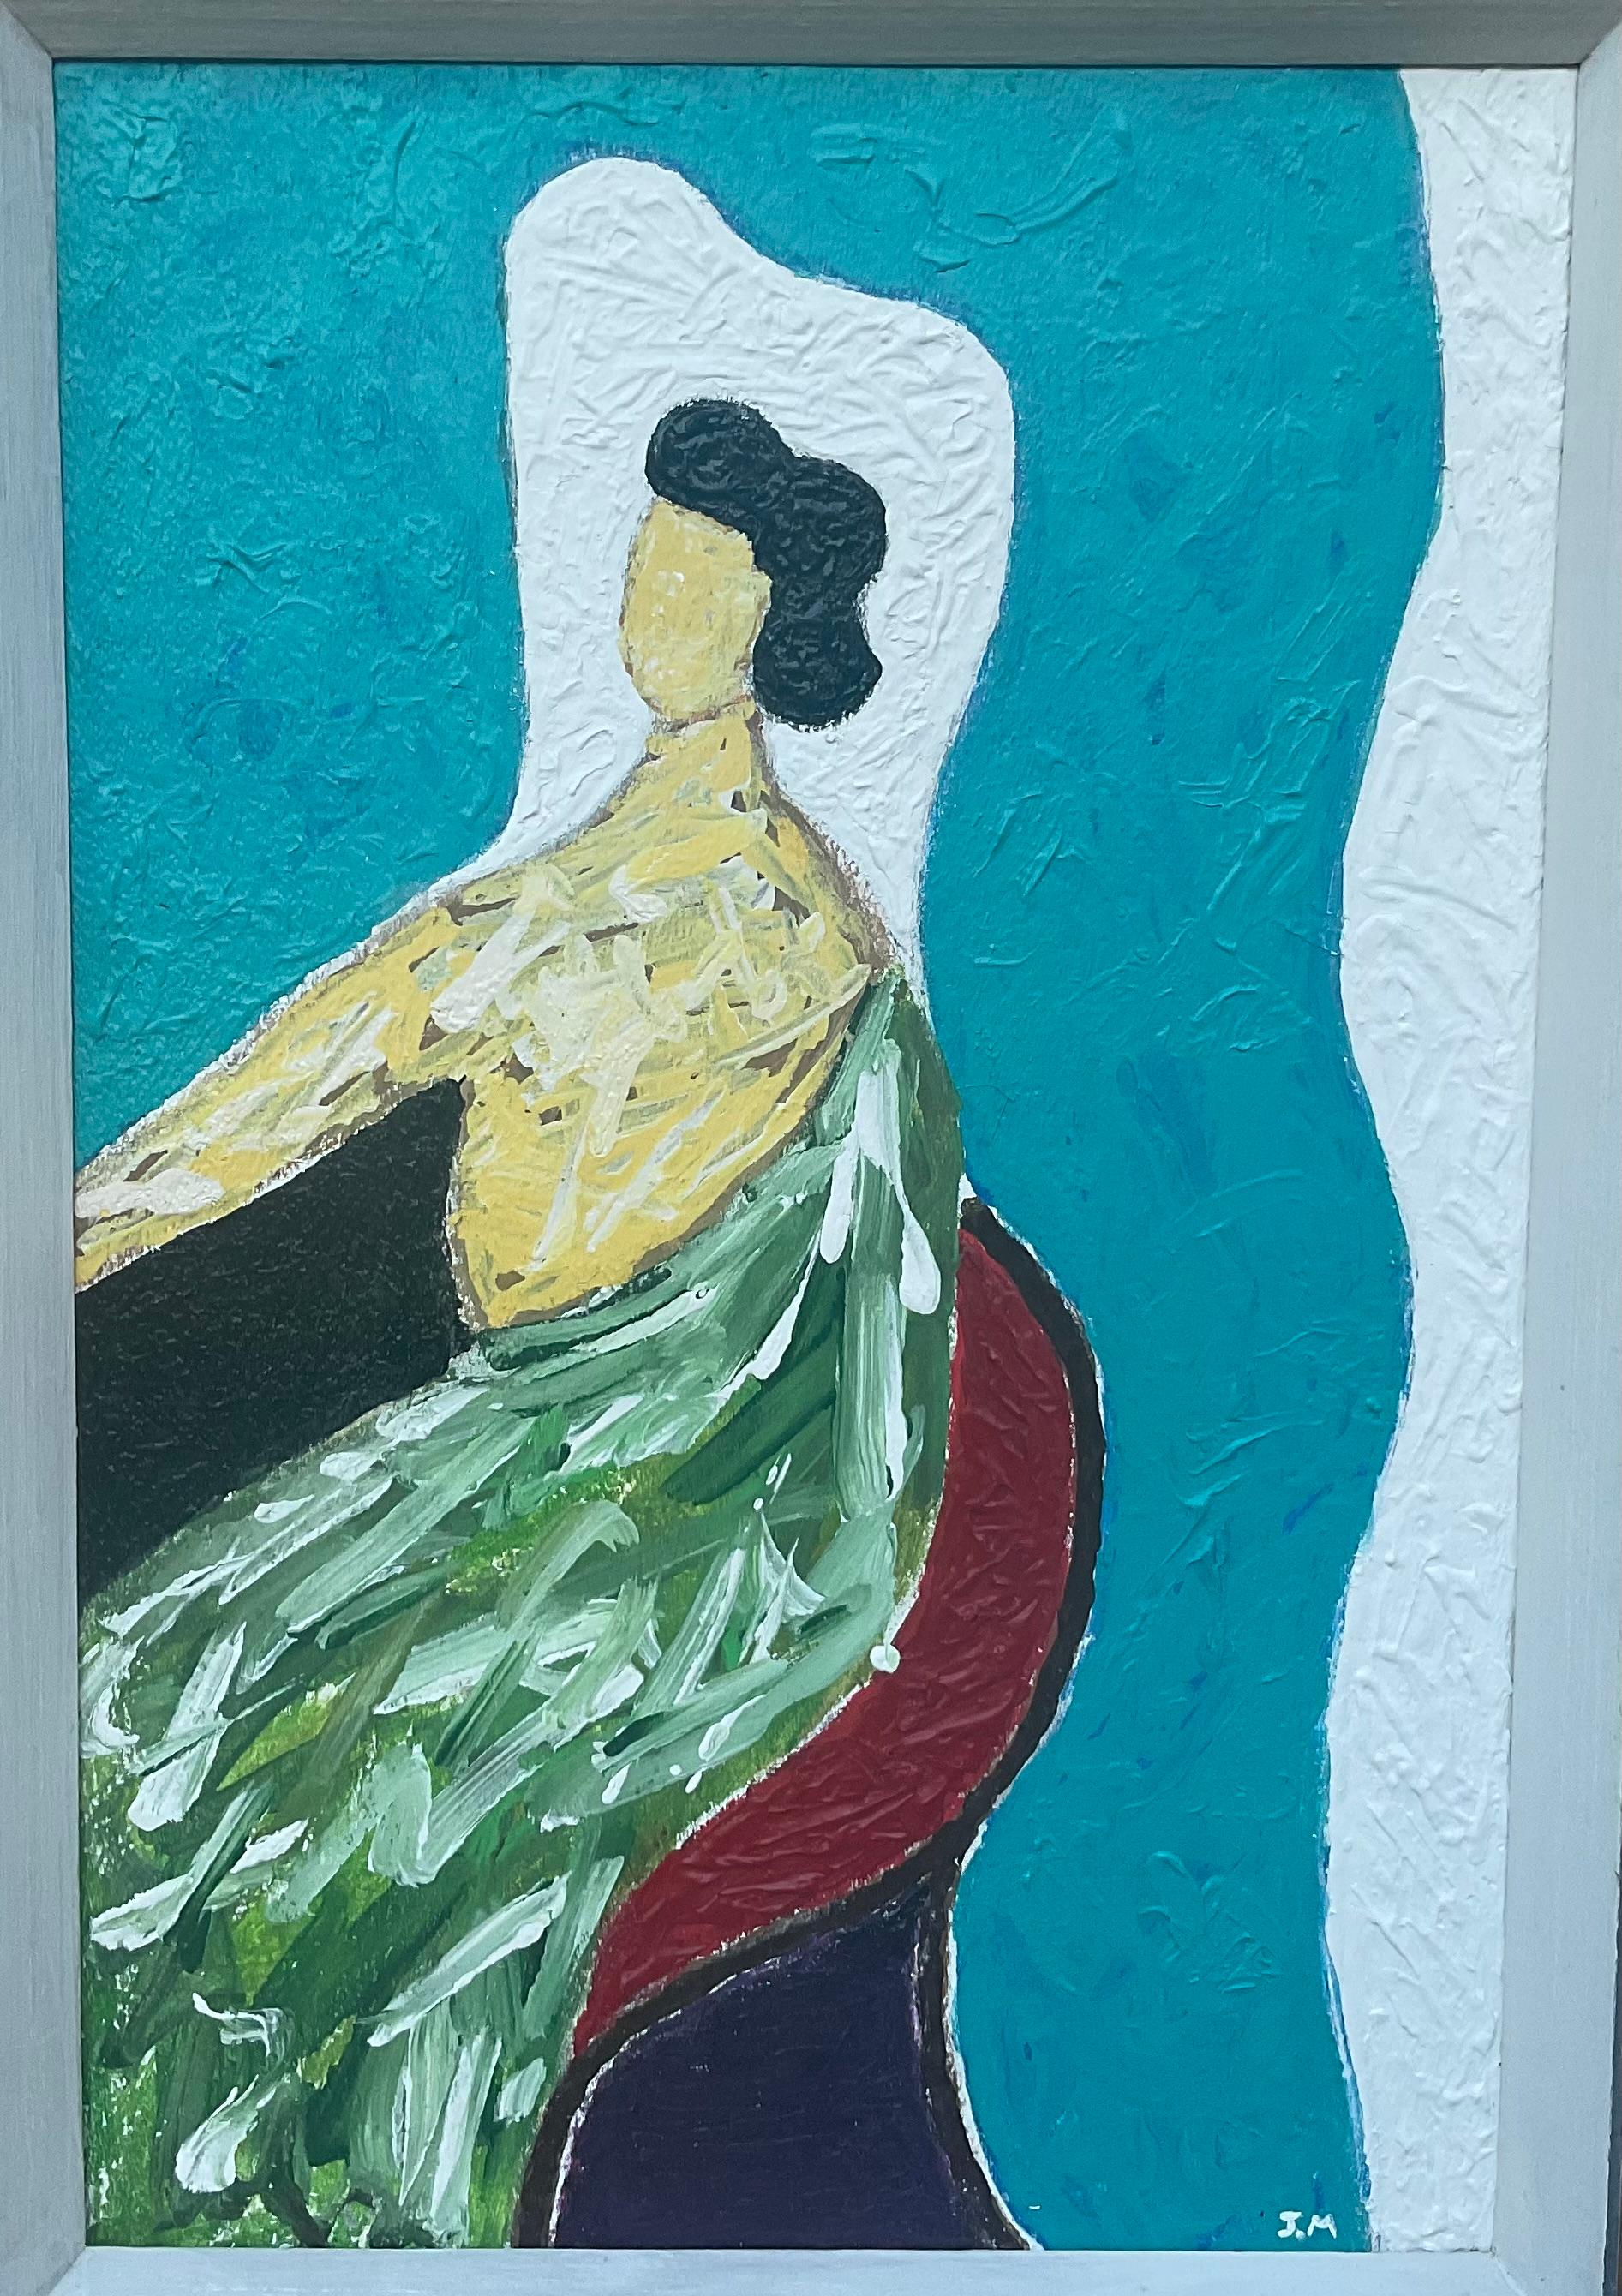 Peinture acrylique sur panneau de bois, représentant une femme élégante assise et regardant vers l'avant, belles couleurs vives sur fond turquoise, cadre en bois ancien.
Taille réelle du tableau :12